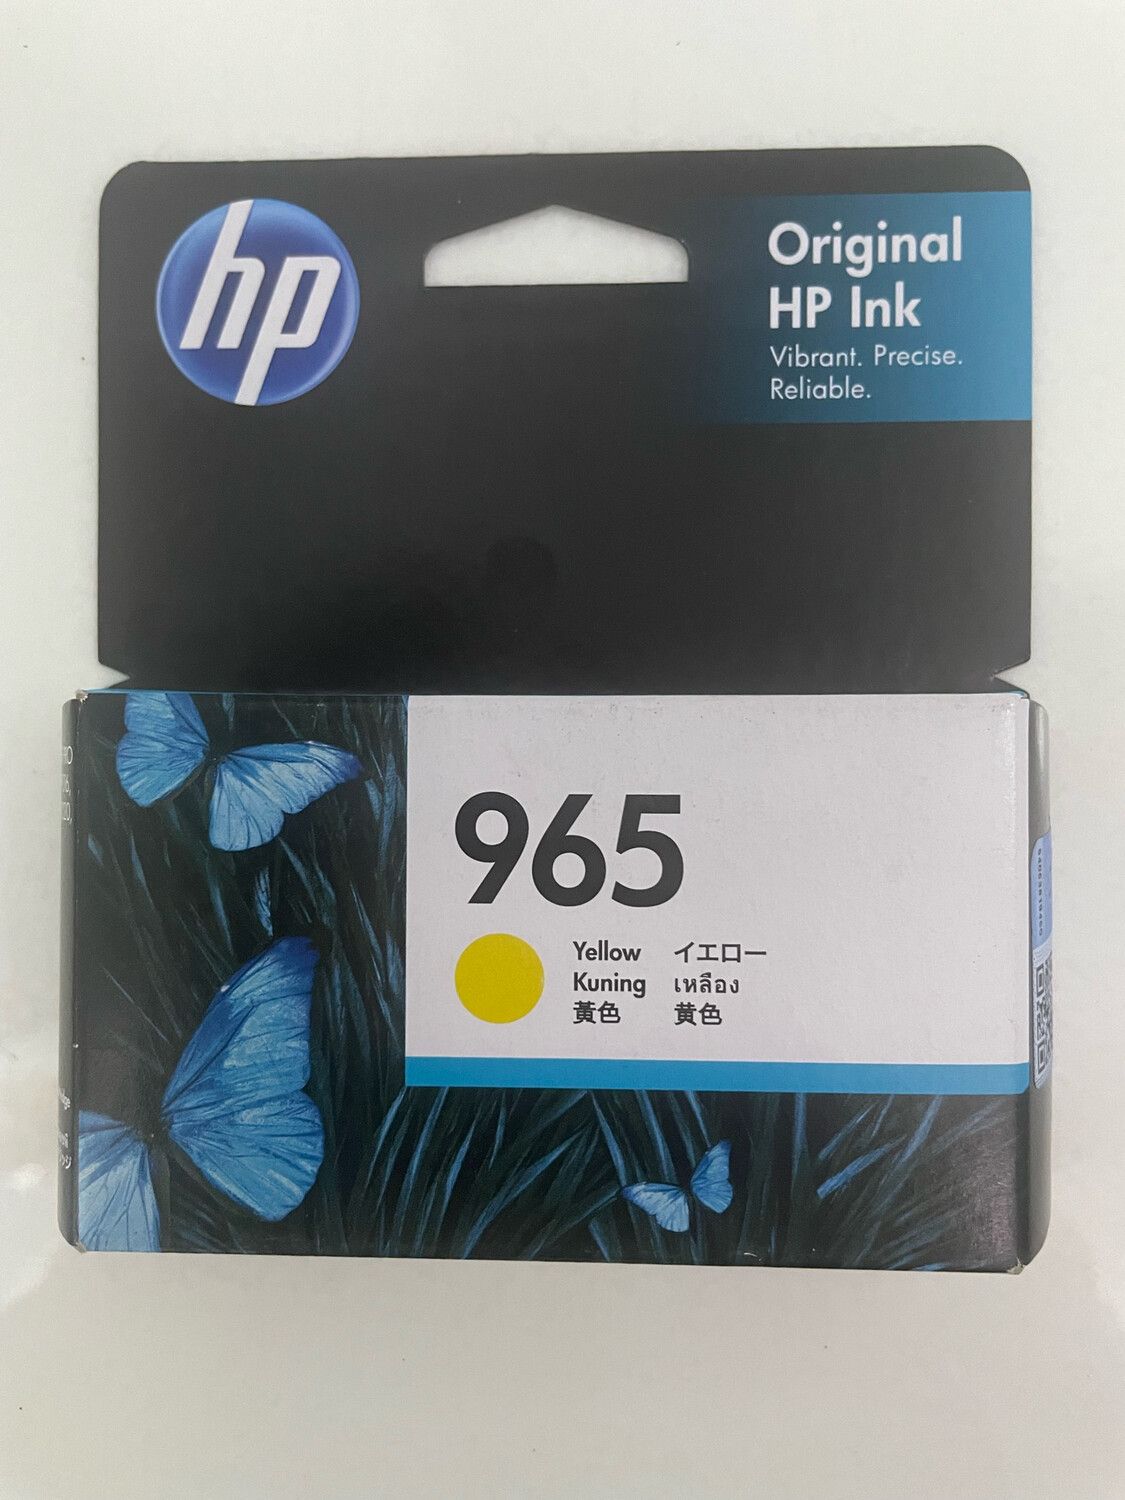 HP Officejet 965 Yellow Ink Cartridge